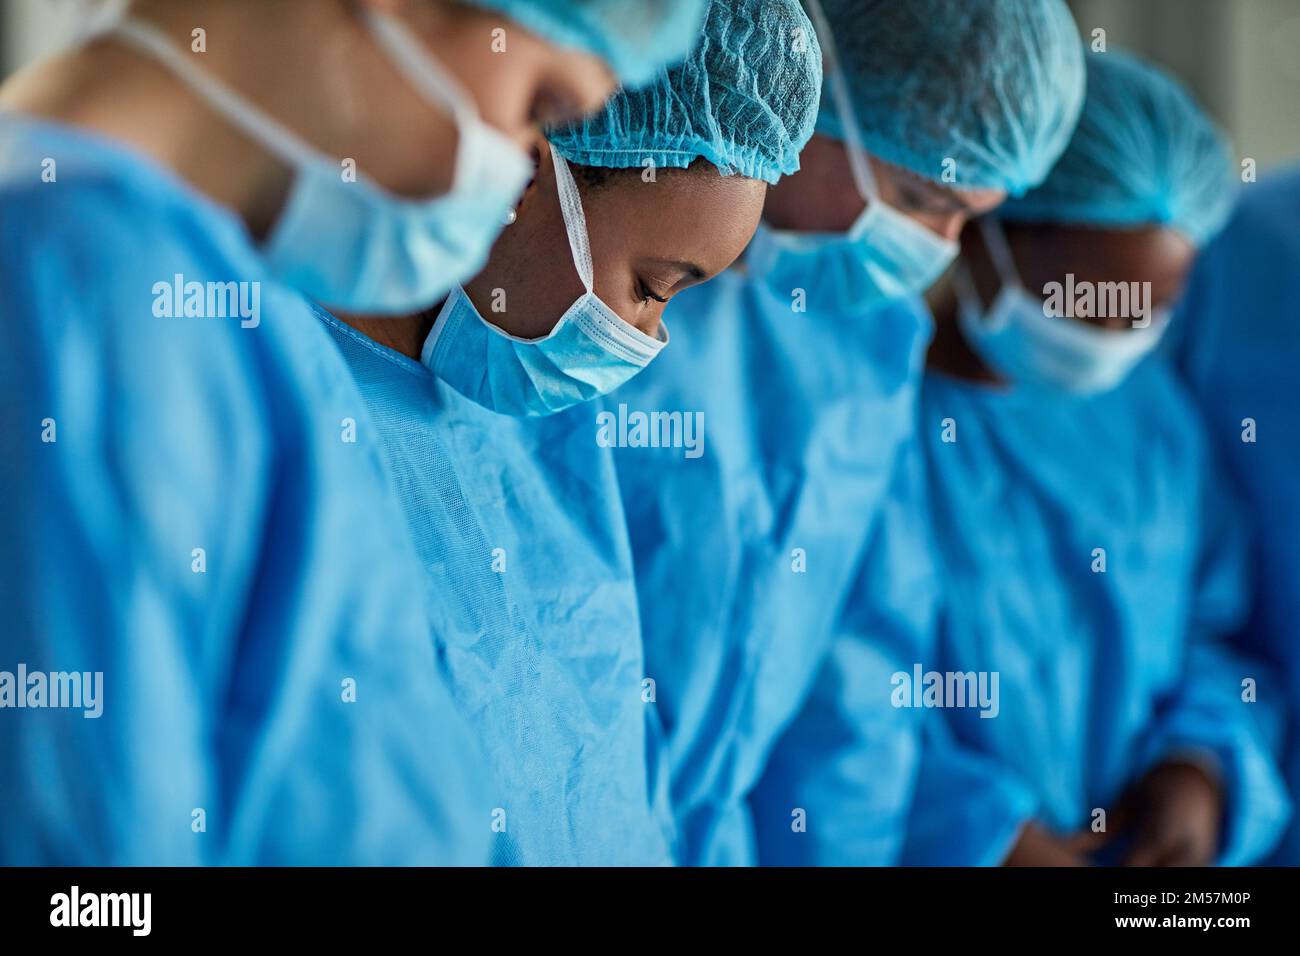 Travailler ensemble sur une intervention chirurgicale. groupe de chirurgiens effectuant une intervention médicale dans une salle d'opération. Banque D'Images